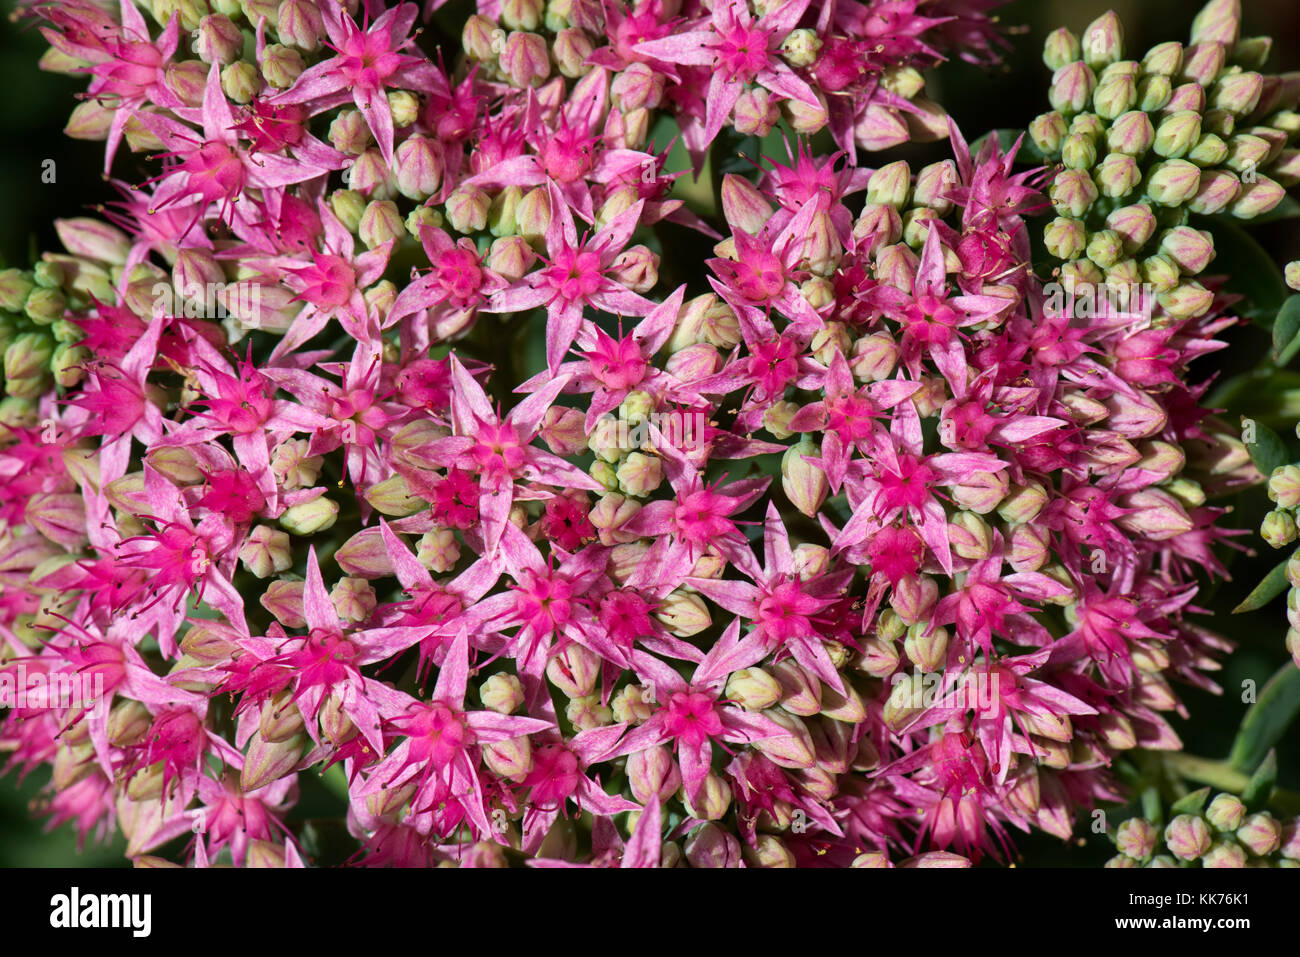 Fleurs en forme d'étoile d'orpin, Hylotelephium spectabile 'carl', une plante ornementale succulente fleurissant à la fin de l'été, août Banque D'Images